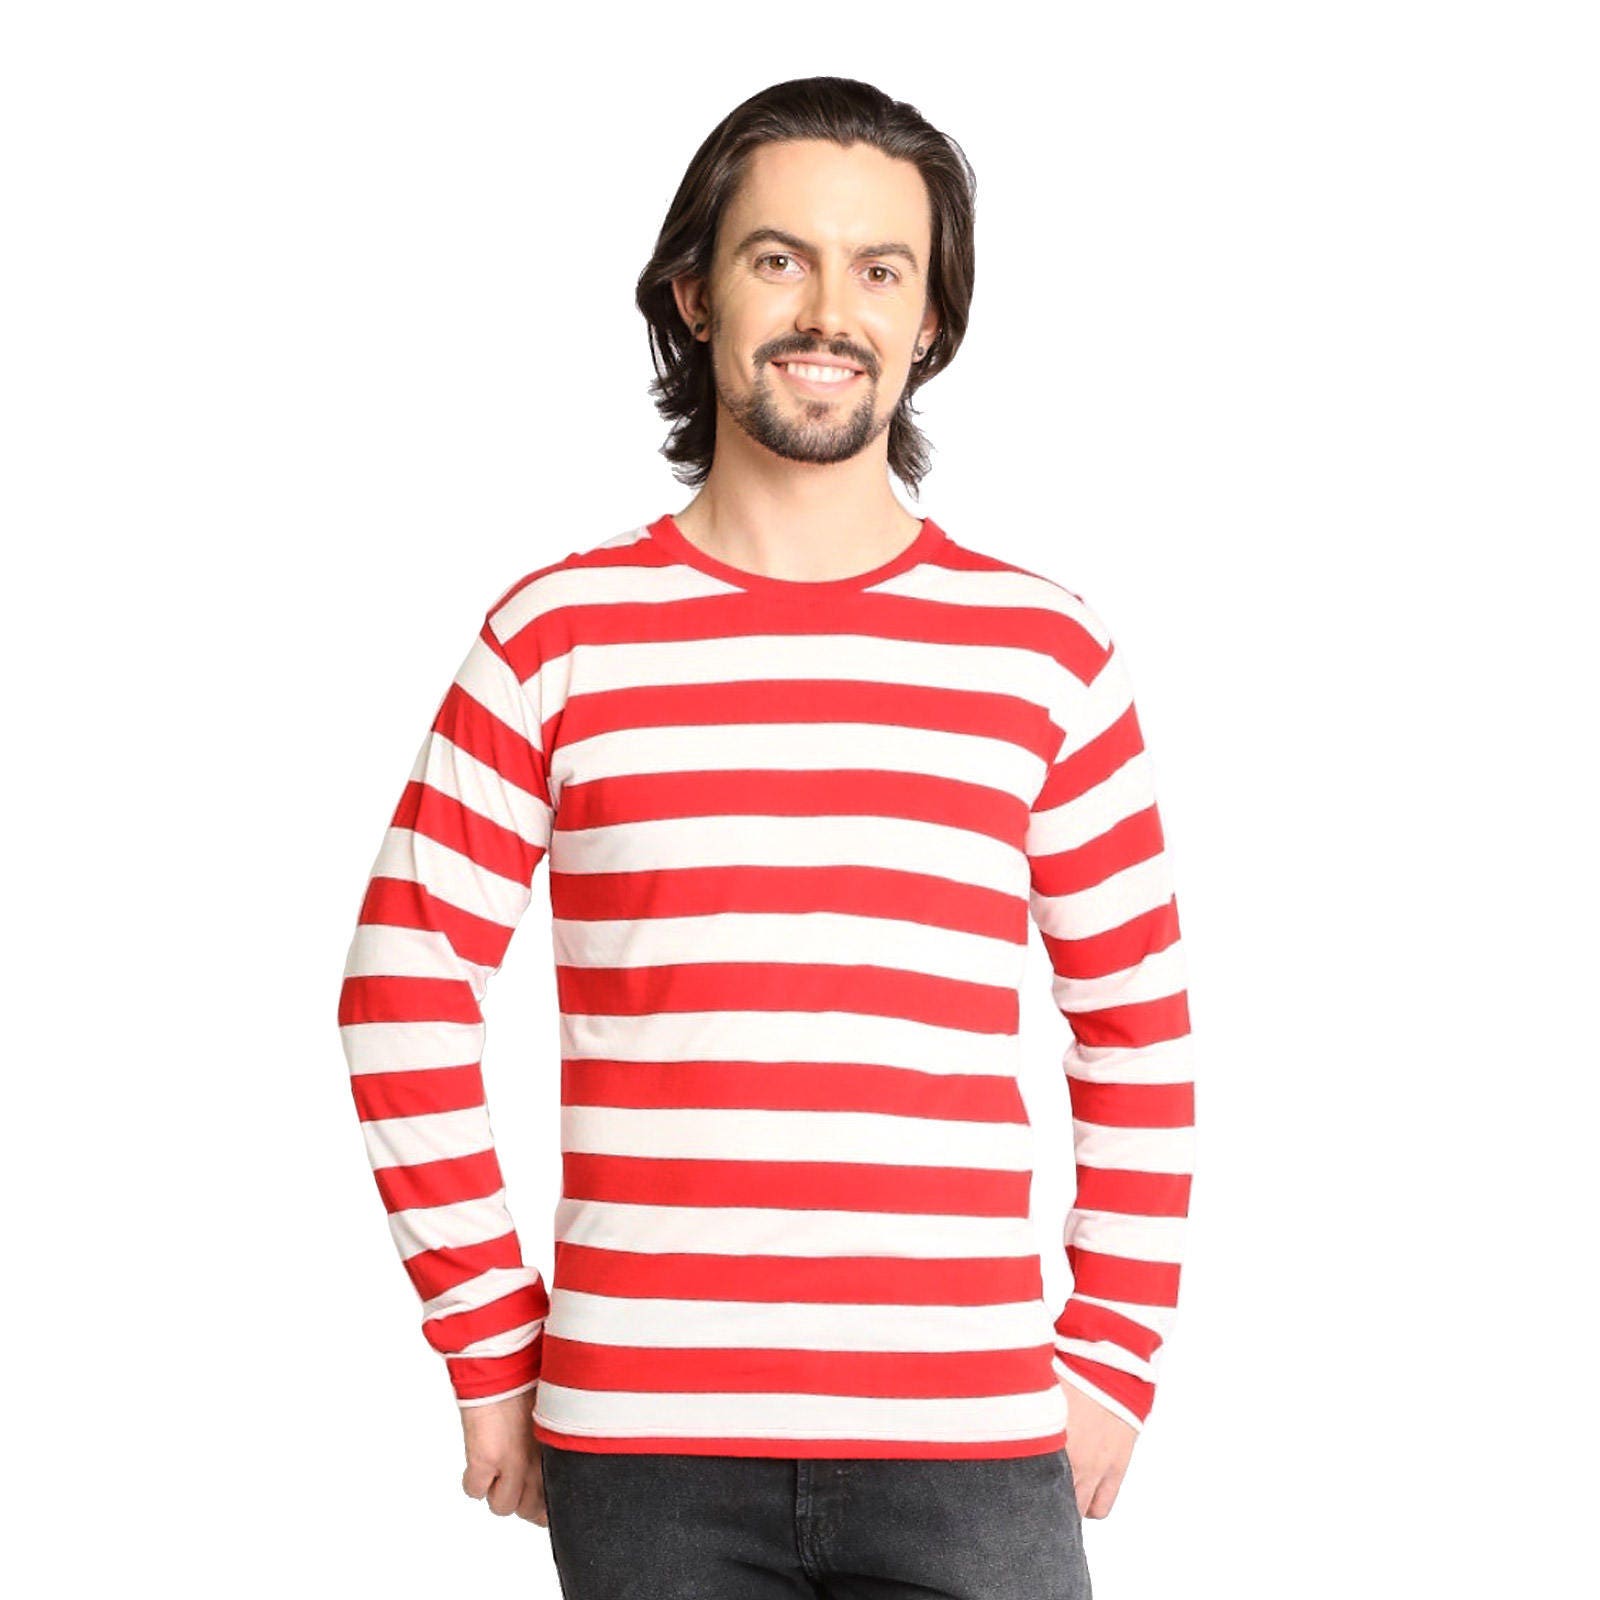 Men's Long Sleeve Red & White Striped Shirt - Etsy